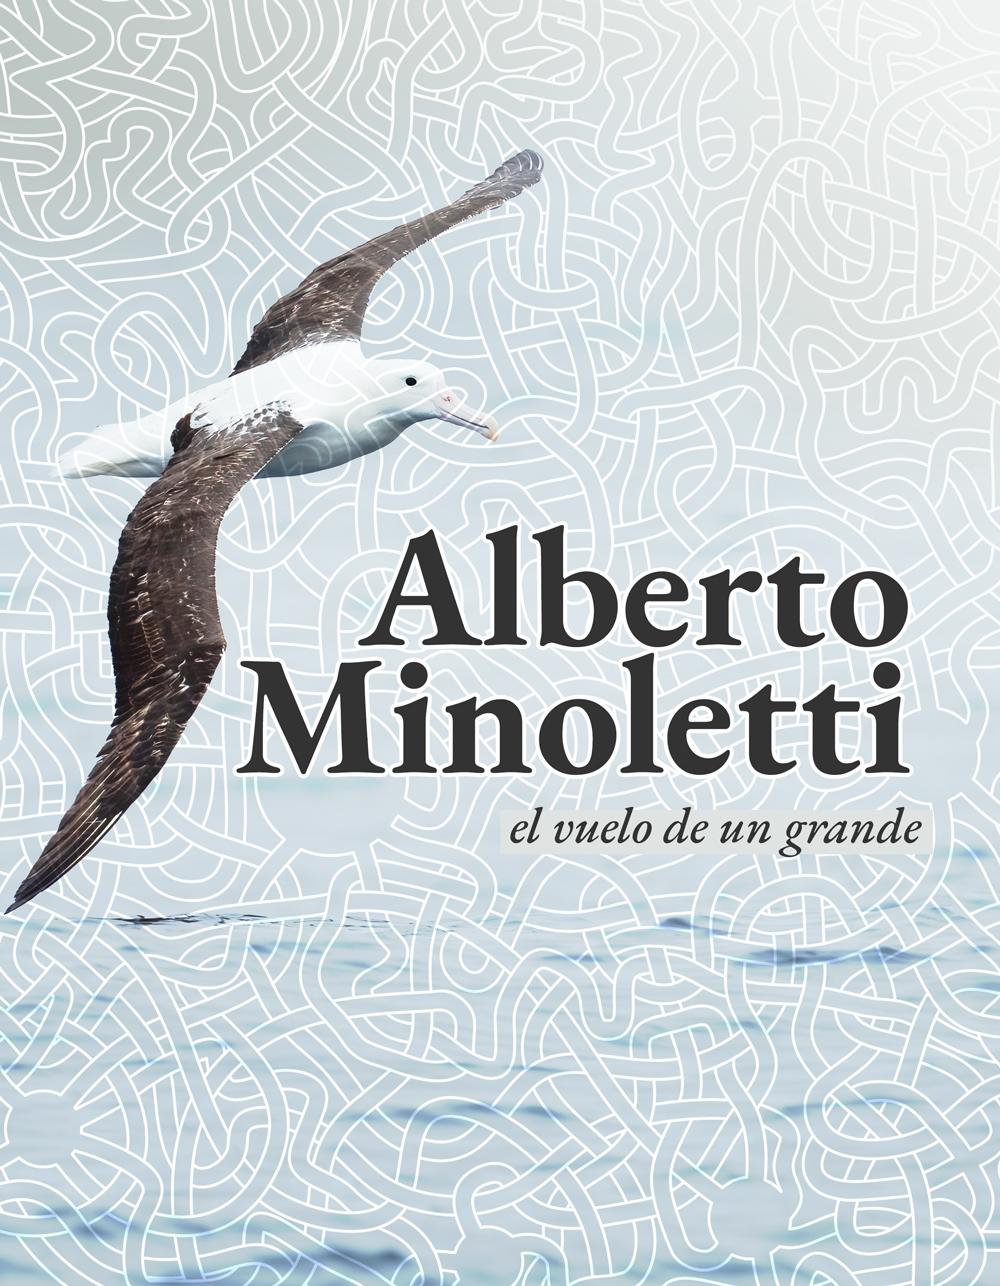 El libro "Alberto Minoletti el vuelo de un grande" se encuentra disponible para su descarga.